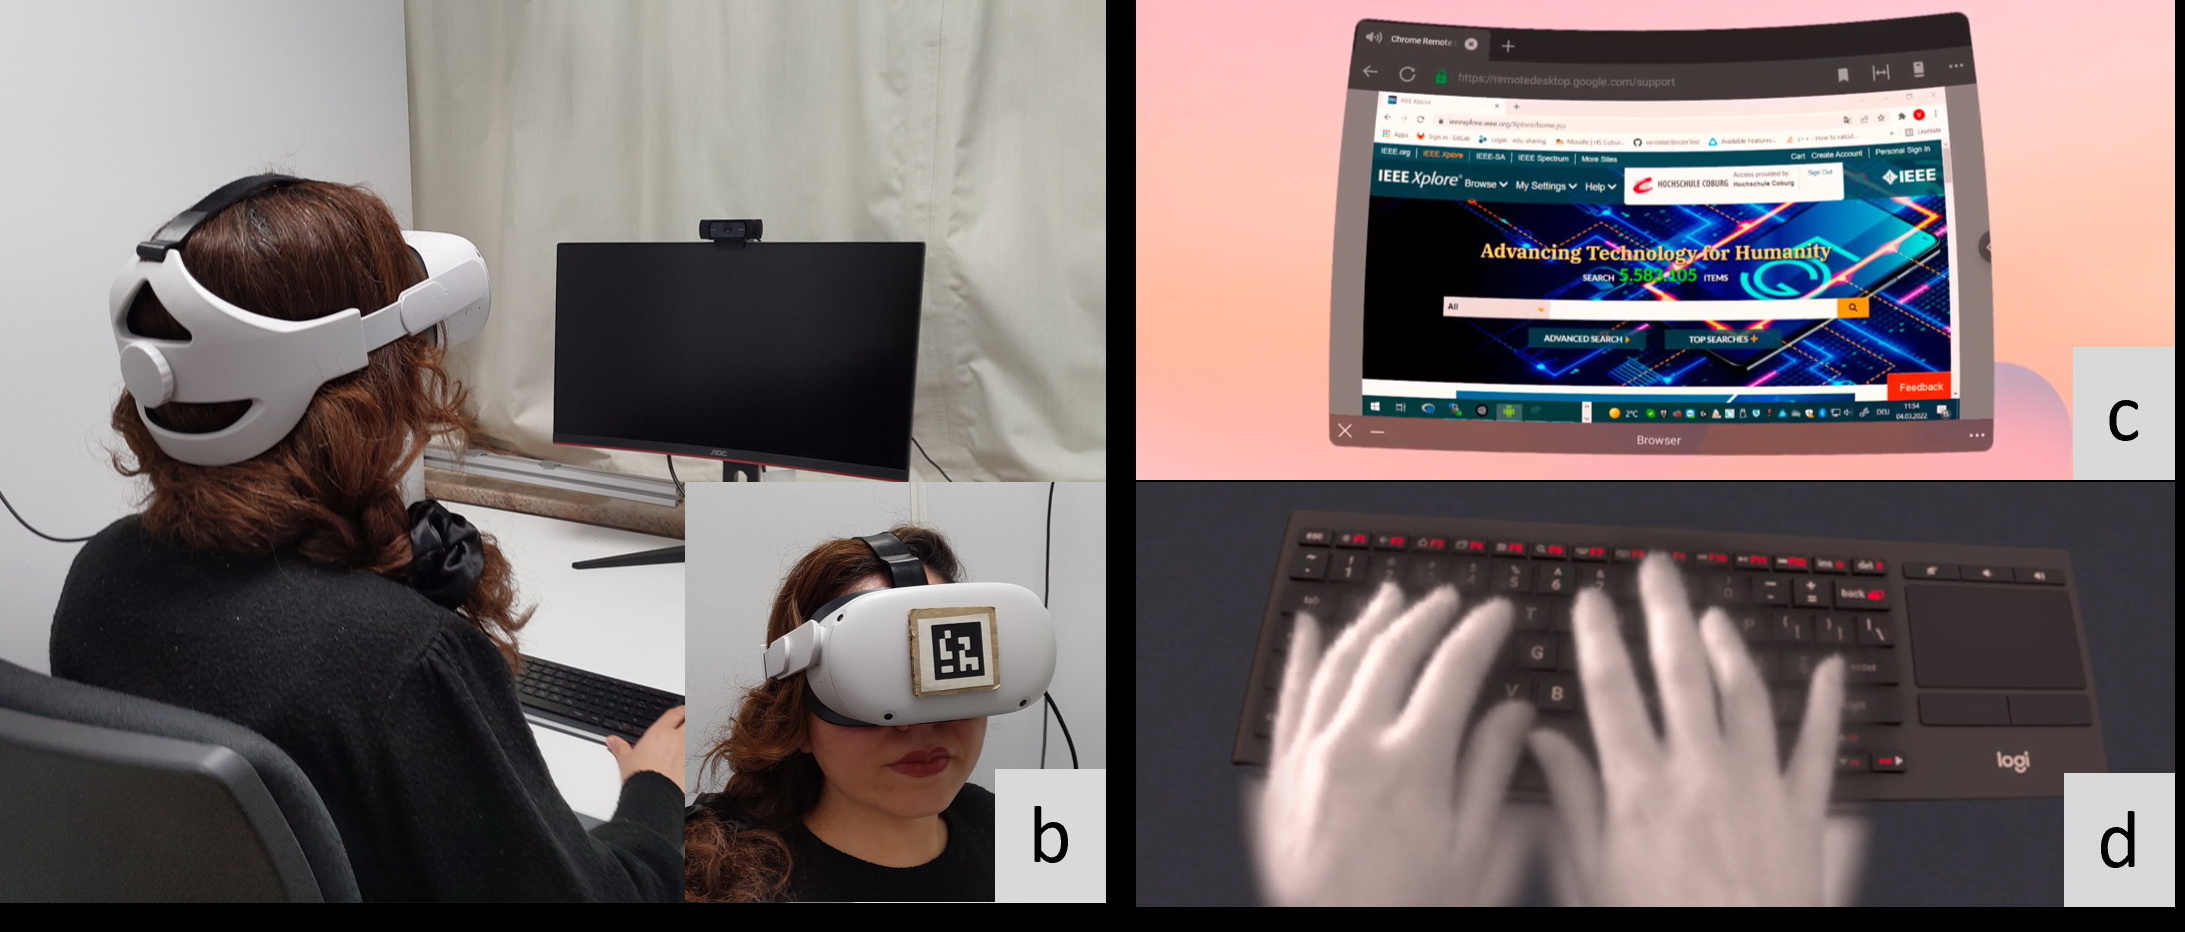 測試者會在VR世界看到一個曲面虛擬屏幕，配合眼罩的透視功能，可利用實體鍵盤打字。（網上圖片）